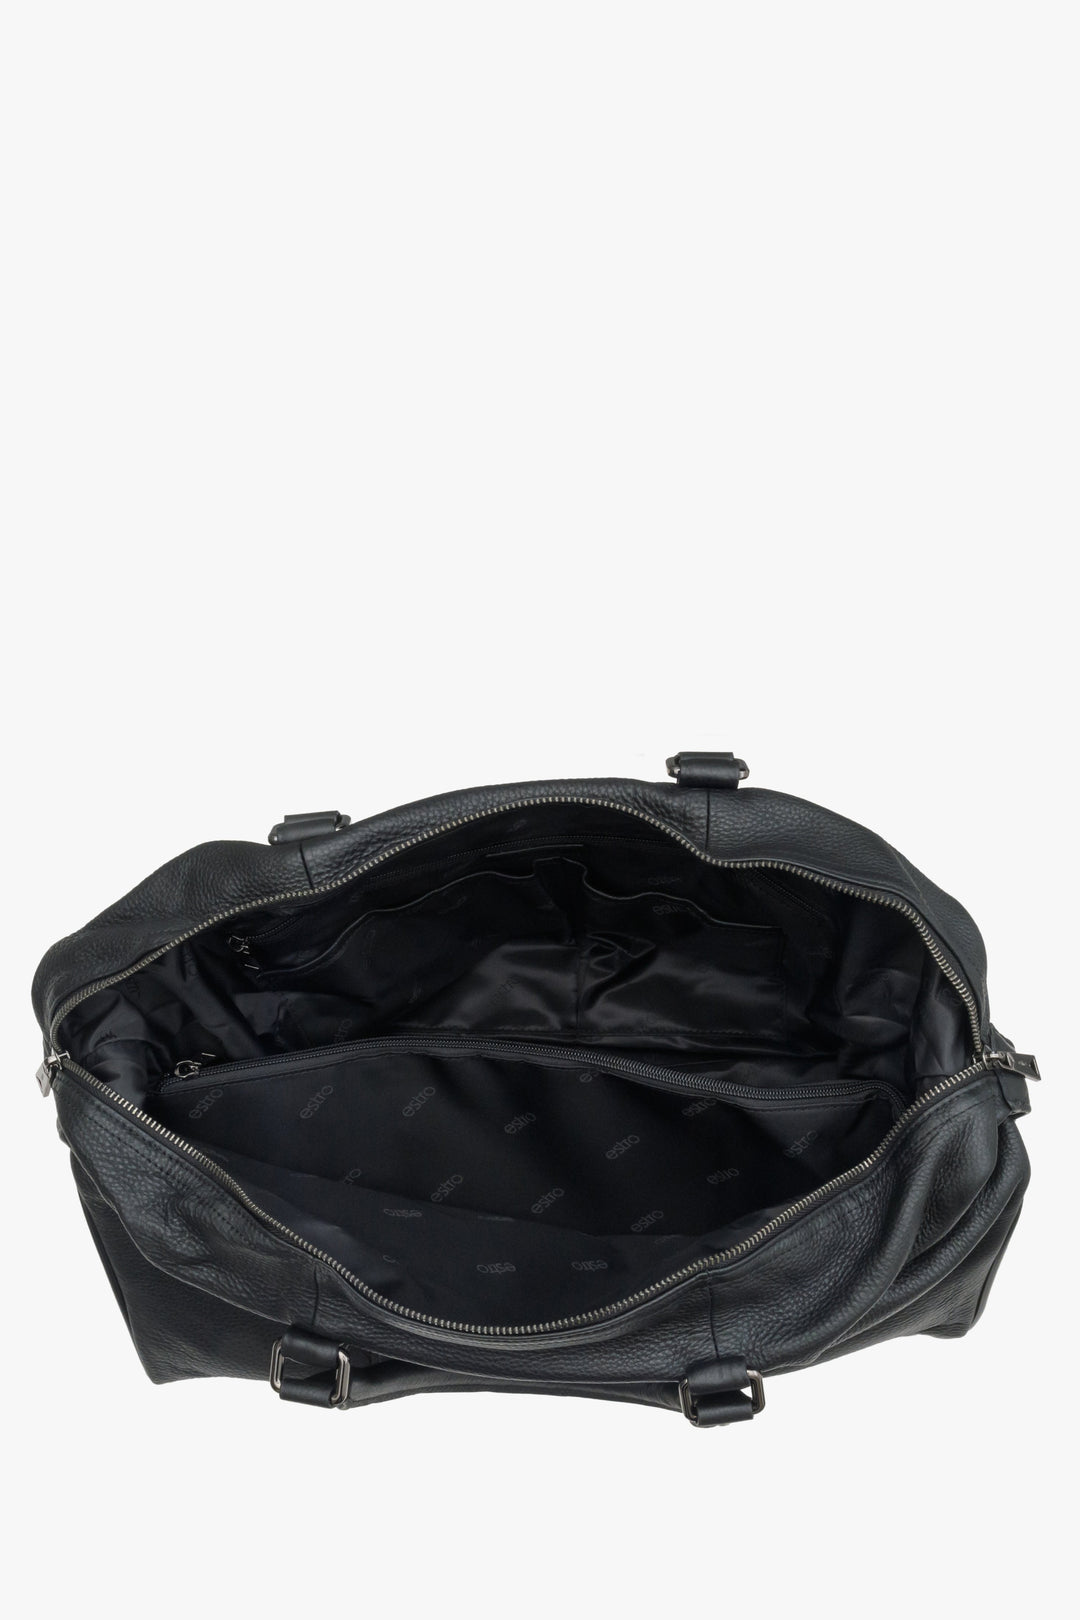 Skórzana czarna torba podróżna męska Estro - wnętrze modelu.